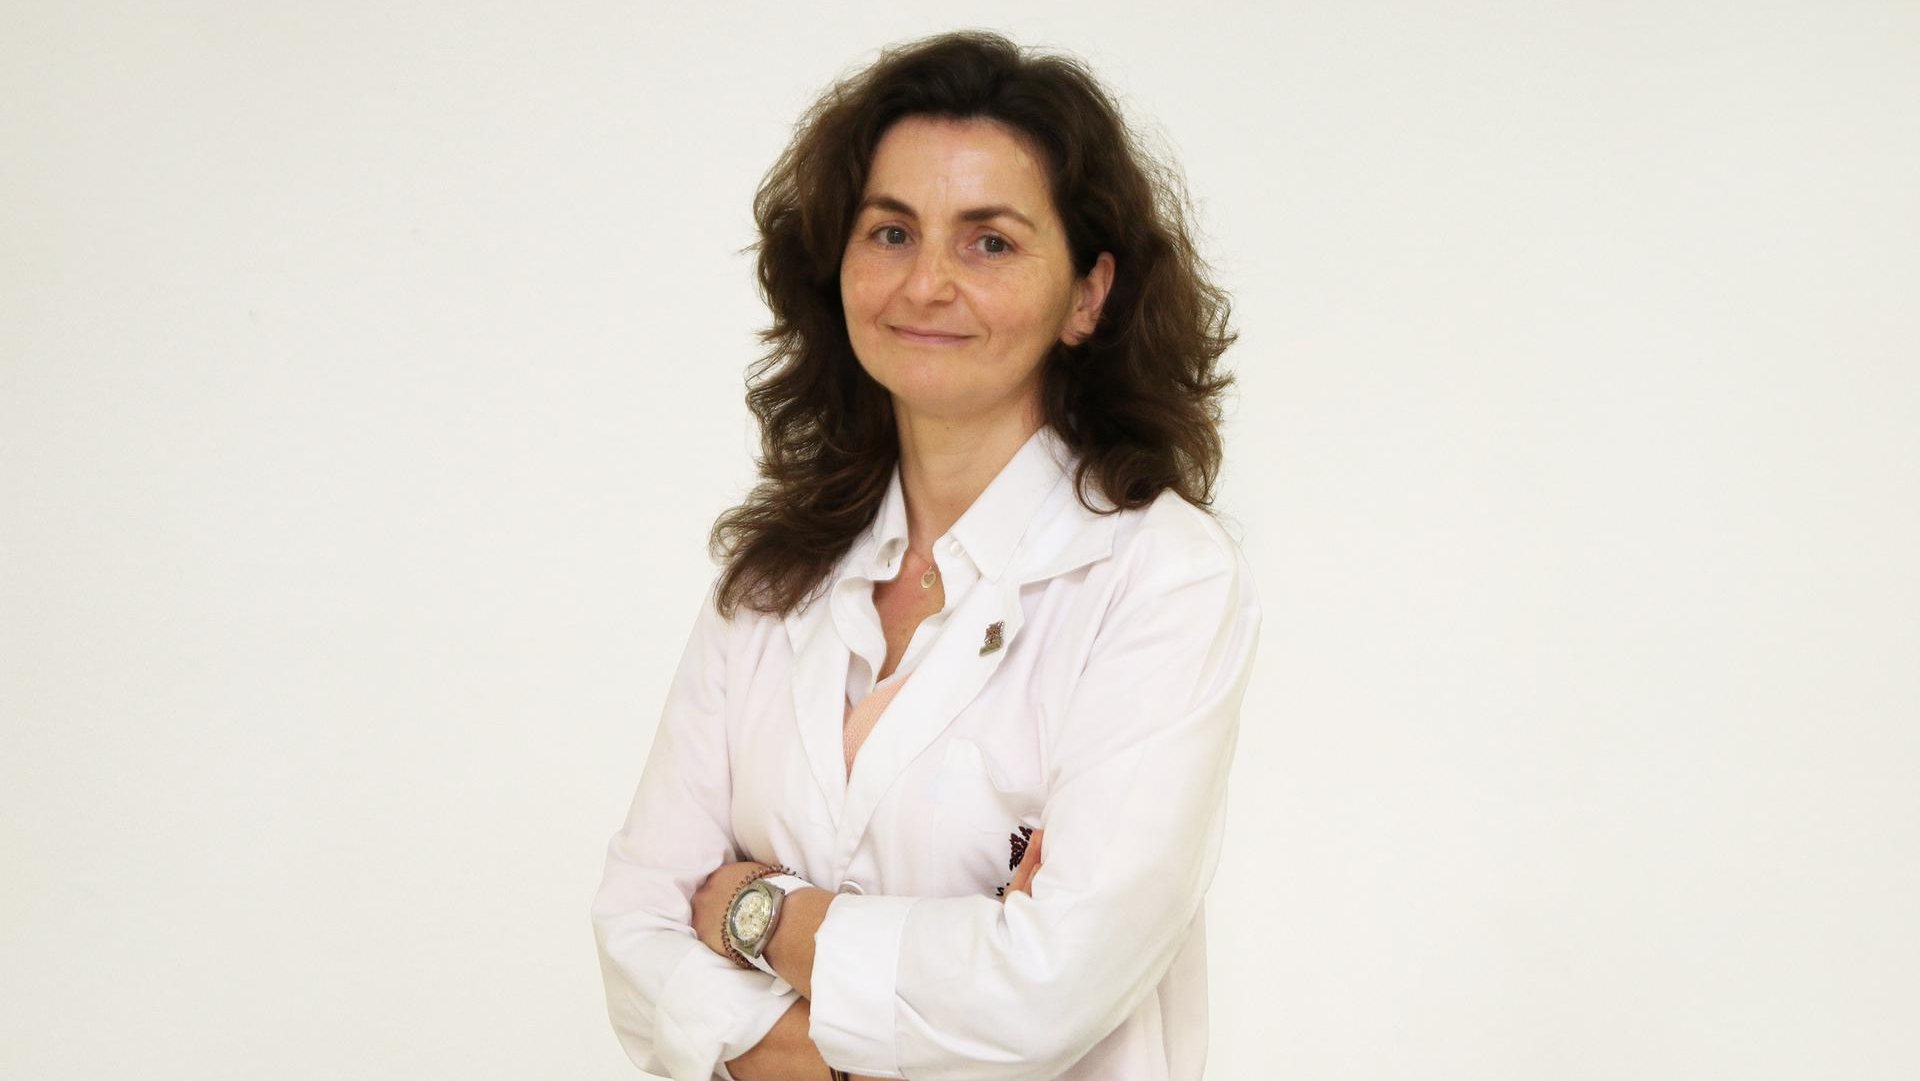 Maria João Baptista é a atual diretora clínica do Centro Hospitalar São João e vai assumir a presidência do Conselho de Administração